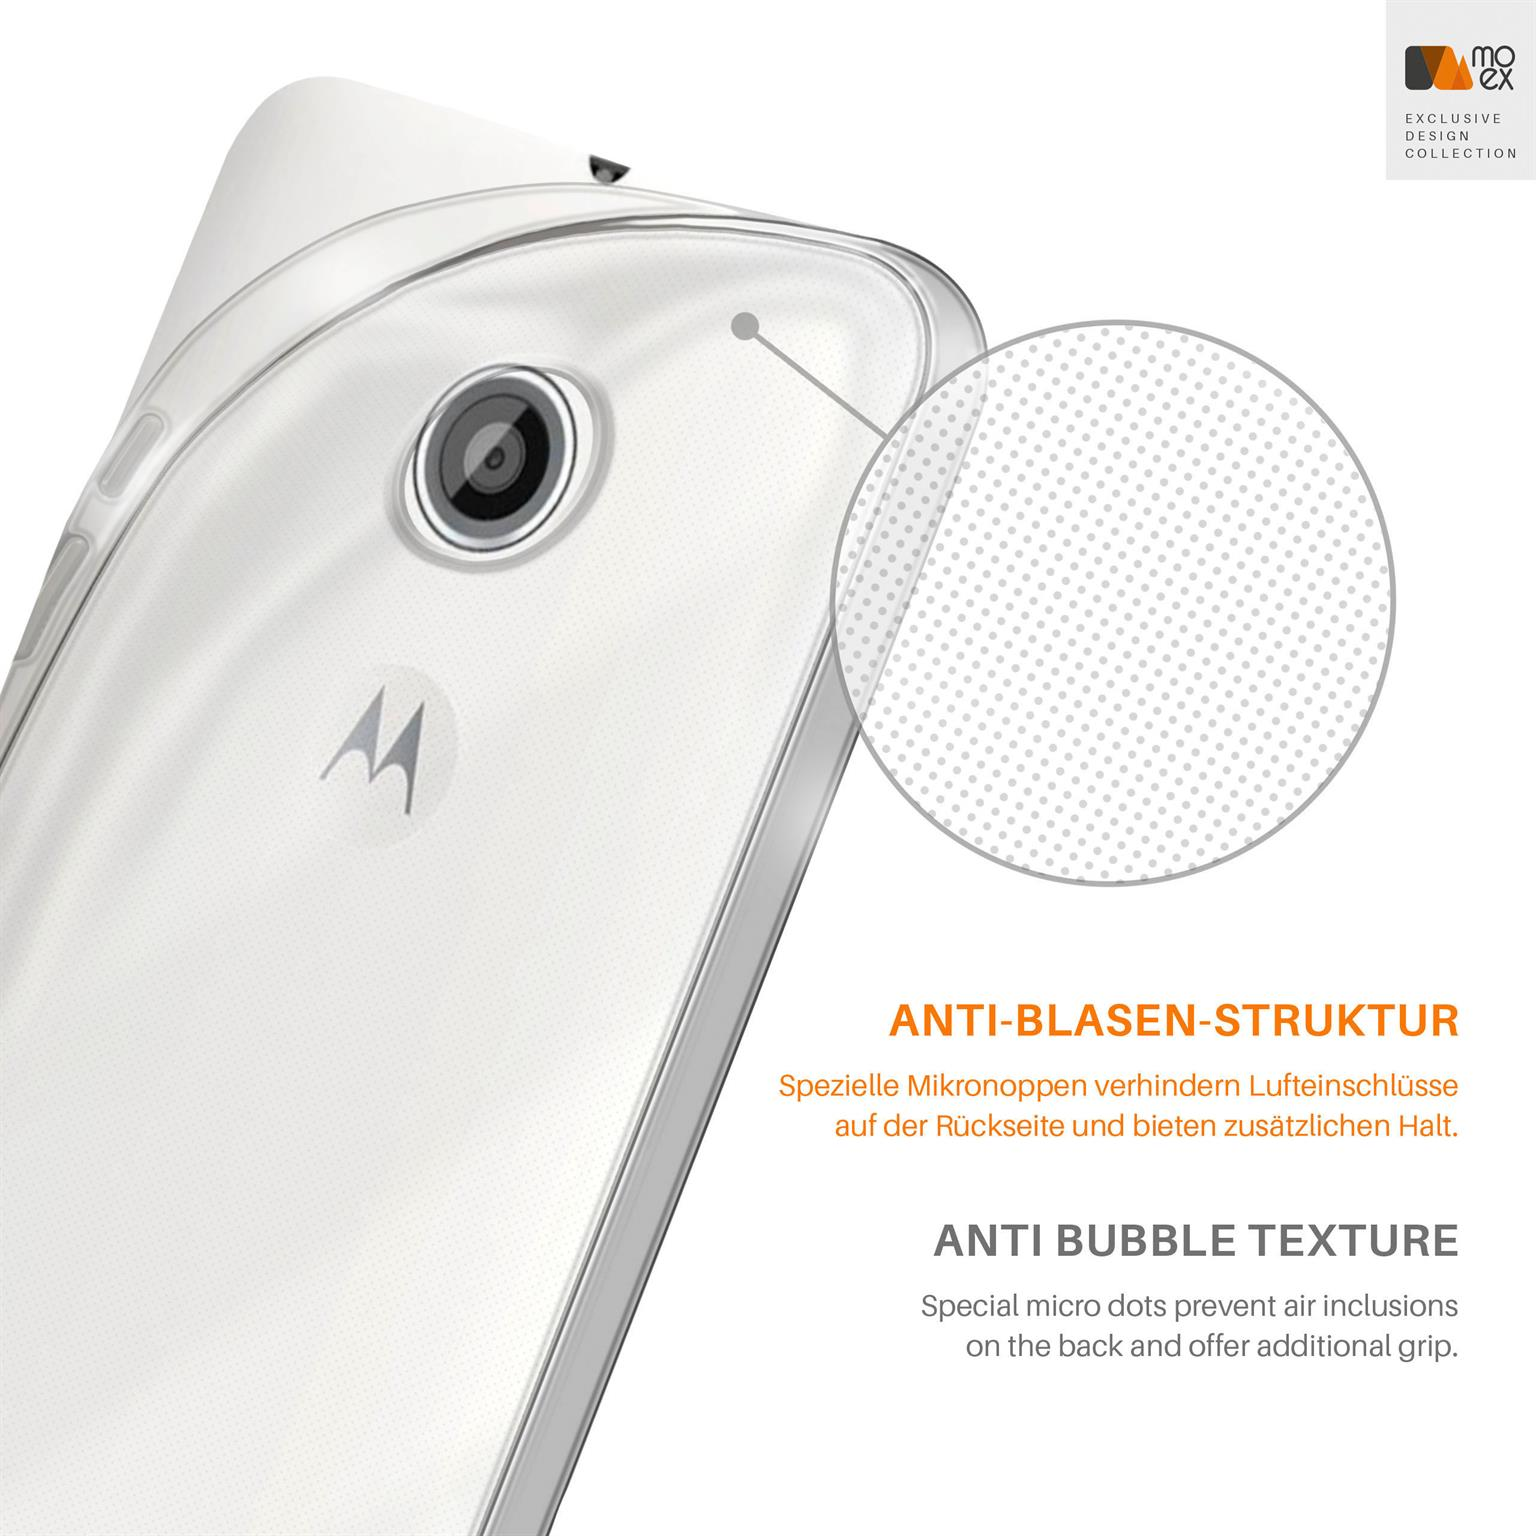 Motorola, Aero Backcover, Moto MOEX Case, Crystal-Clear E,